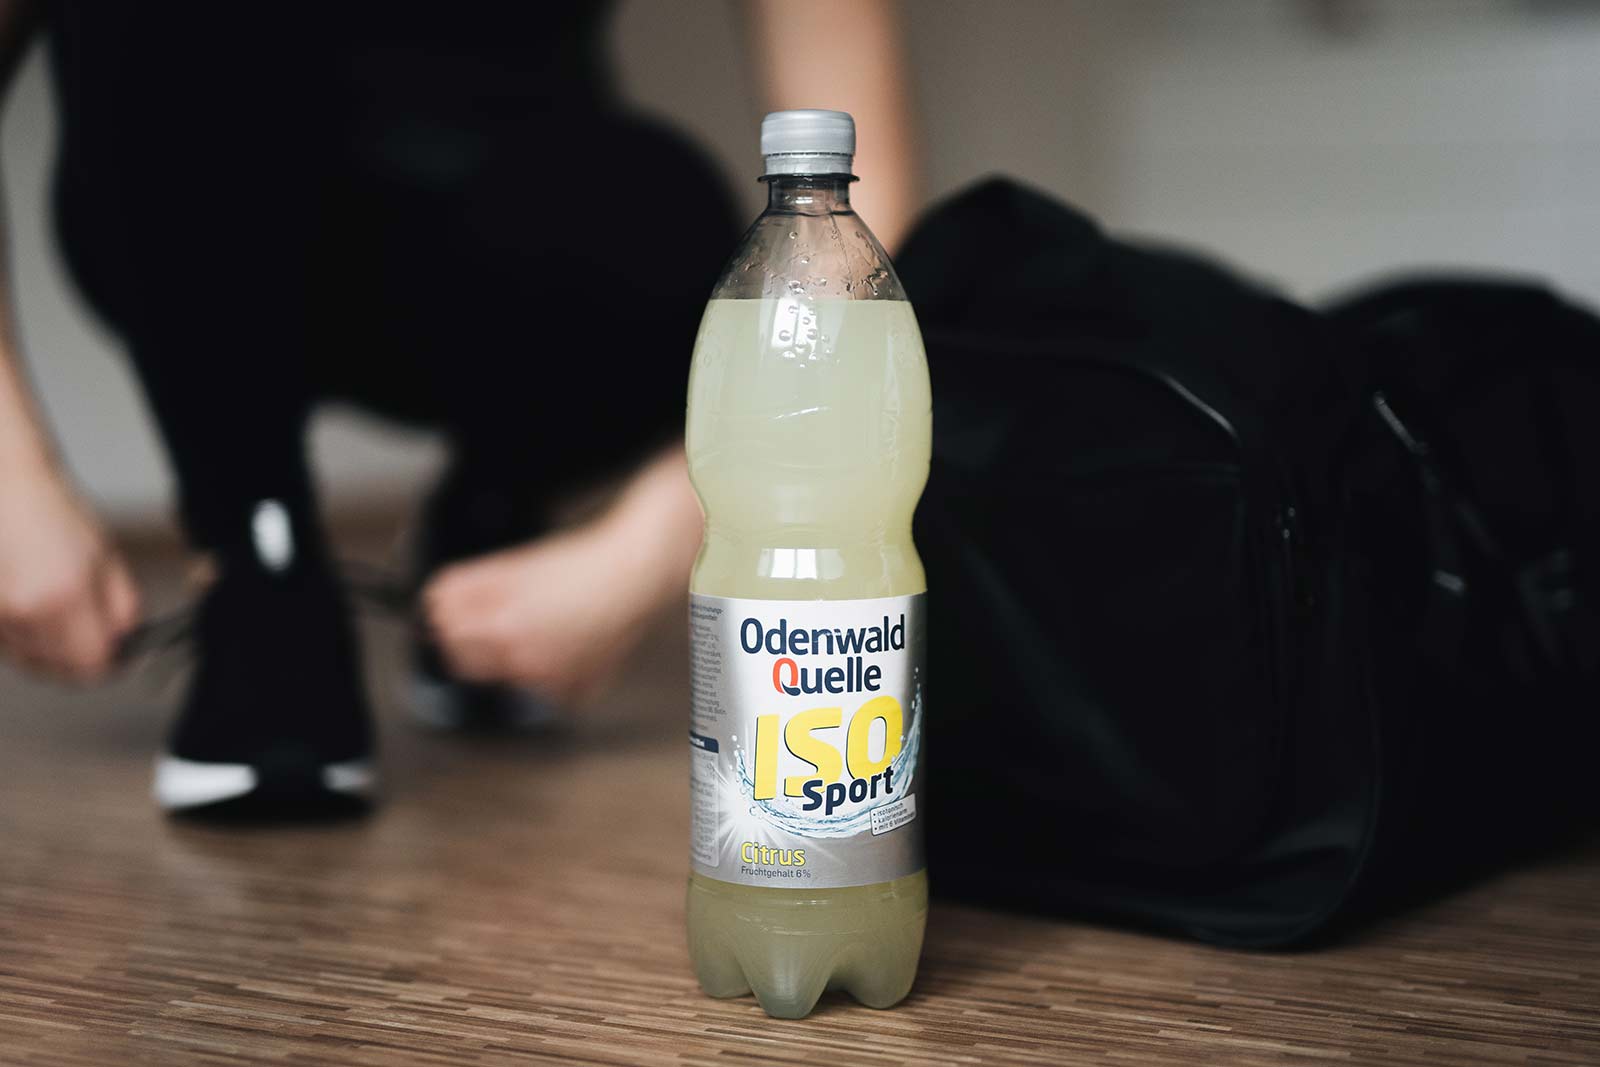 Odenwald Quelle Iso Sport Flasche 